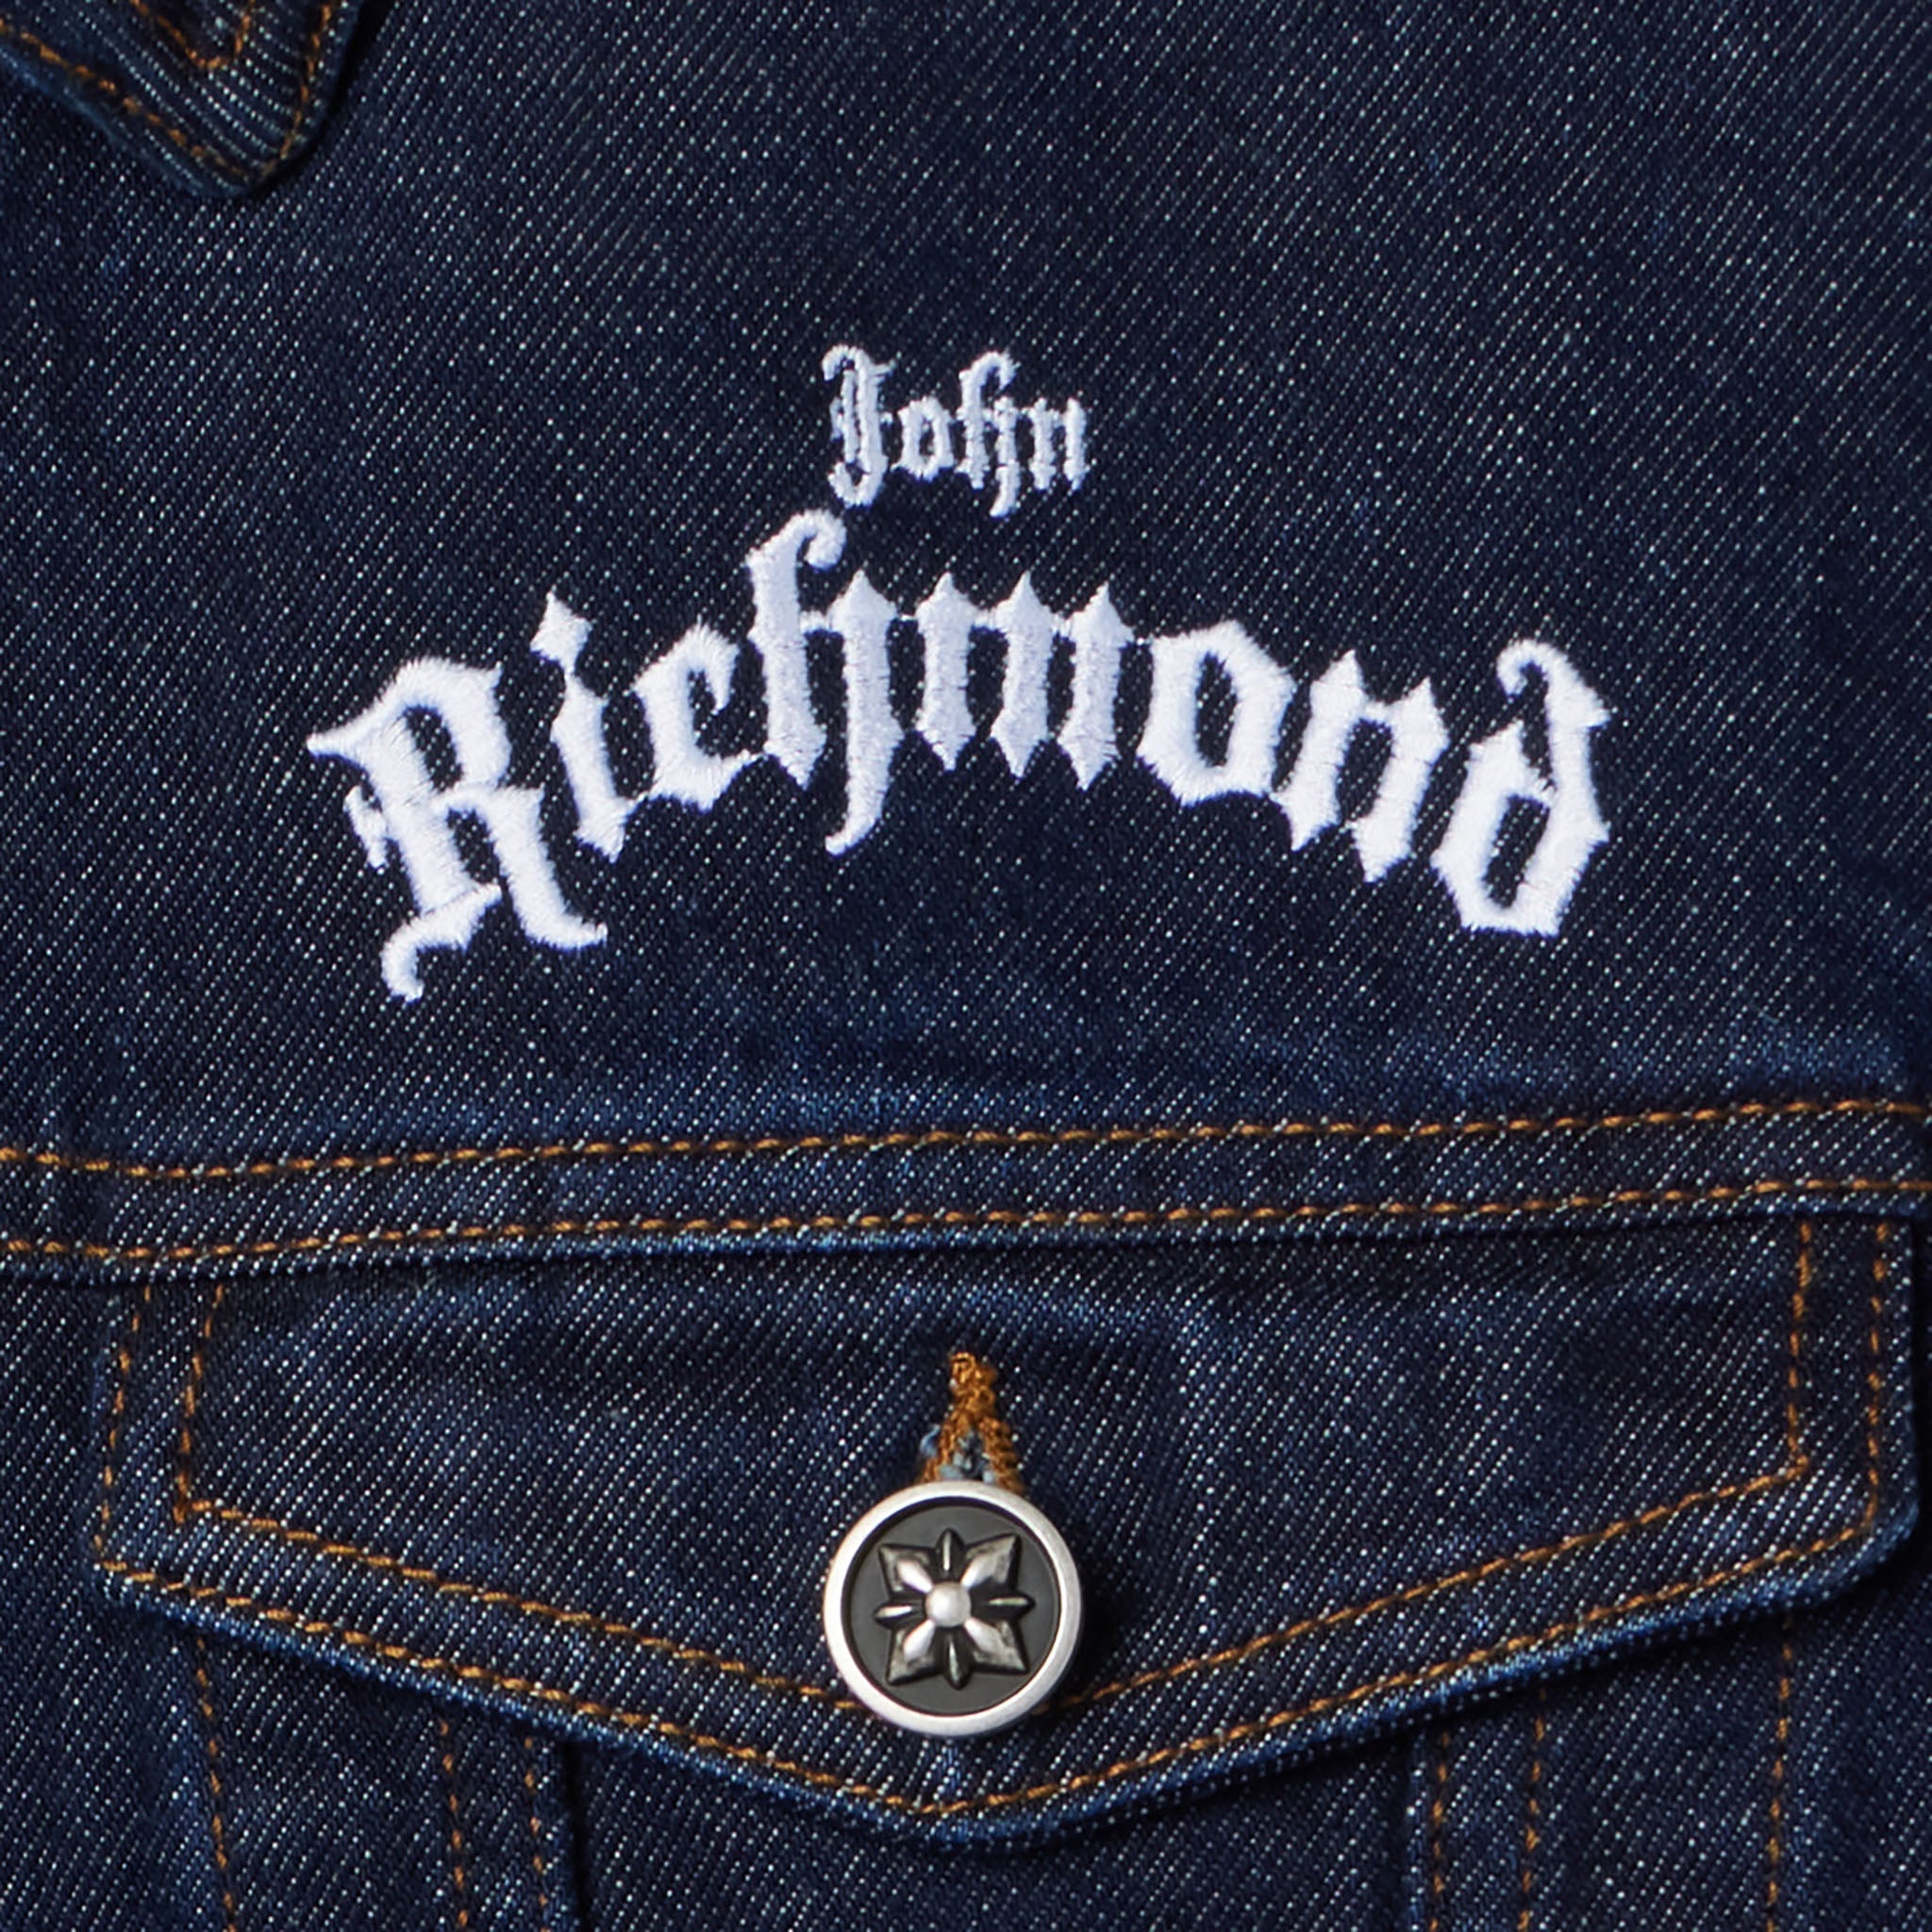 Playboy x John Richmond Denim Jacket